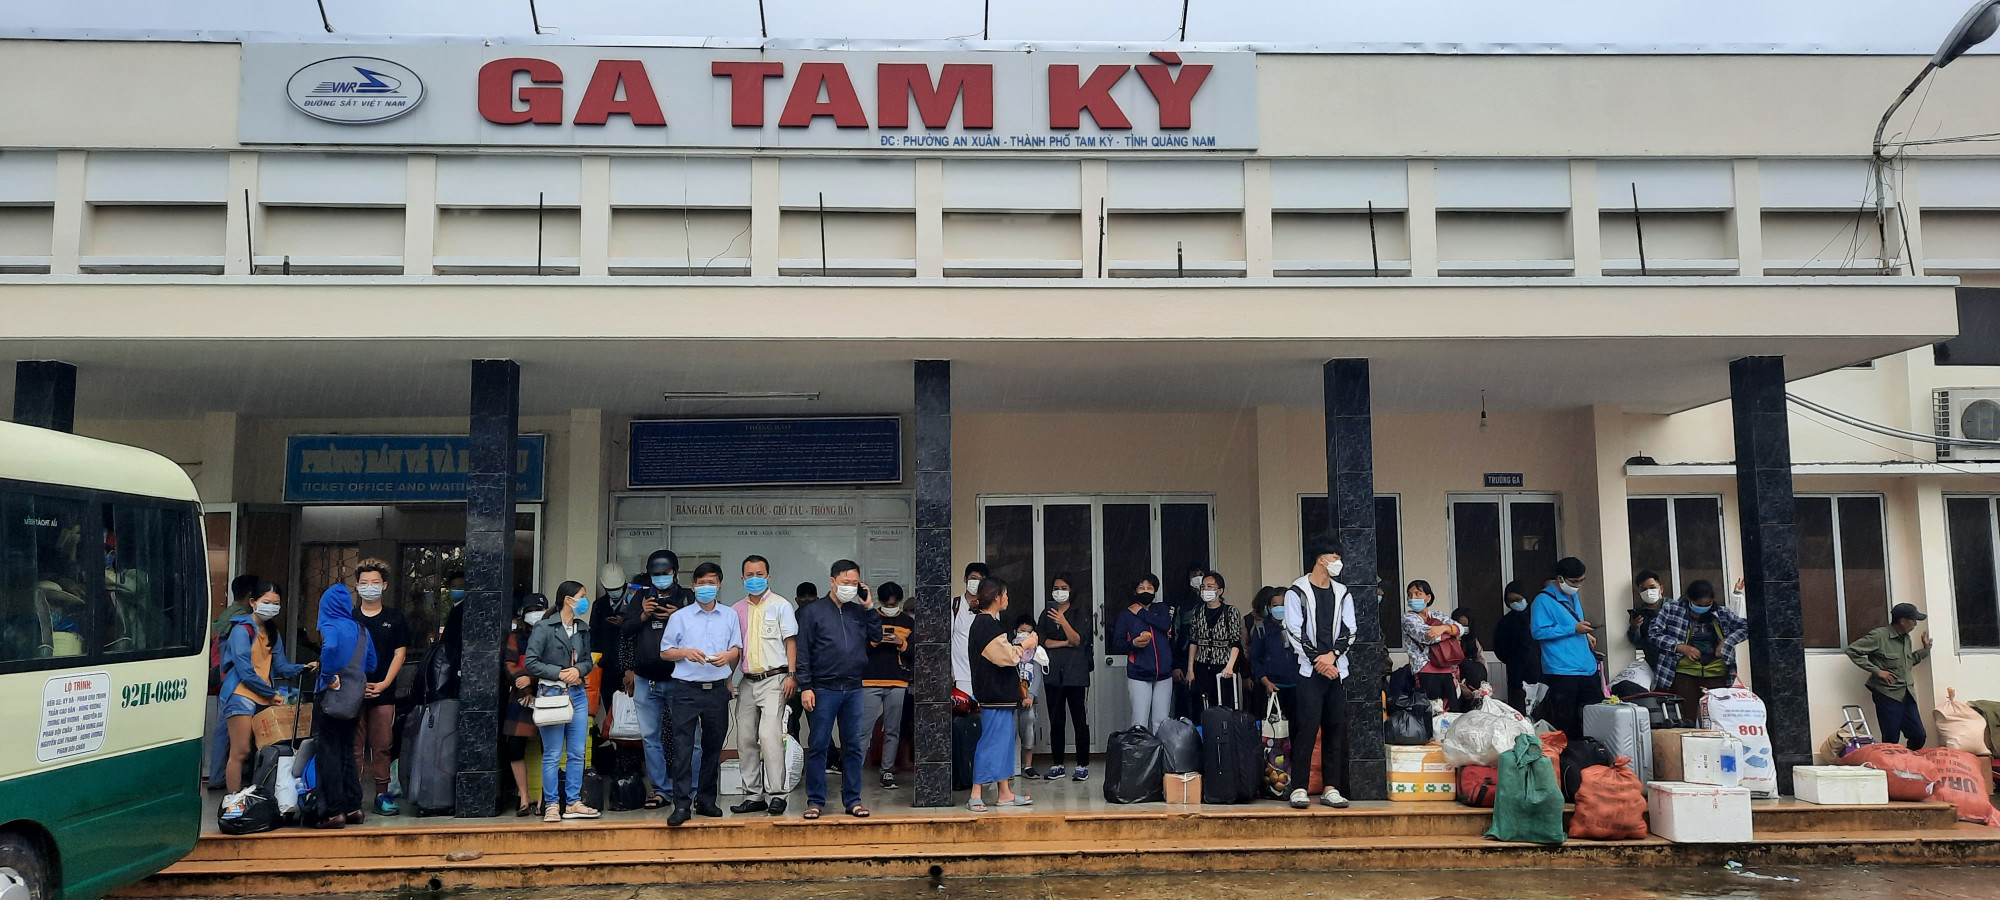 Do mưa lớn, đoạn đường sắt qua huyện Núi Thành - Tam Kỳ bị sạt lở, ngập nước khiến 250 hành khách phải xuống ga Tam Kỳ để trung chuyển vào Quảng Ngãi